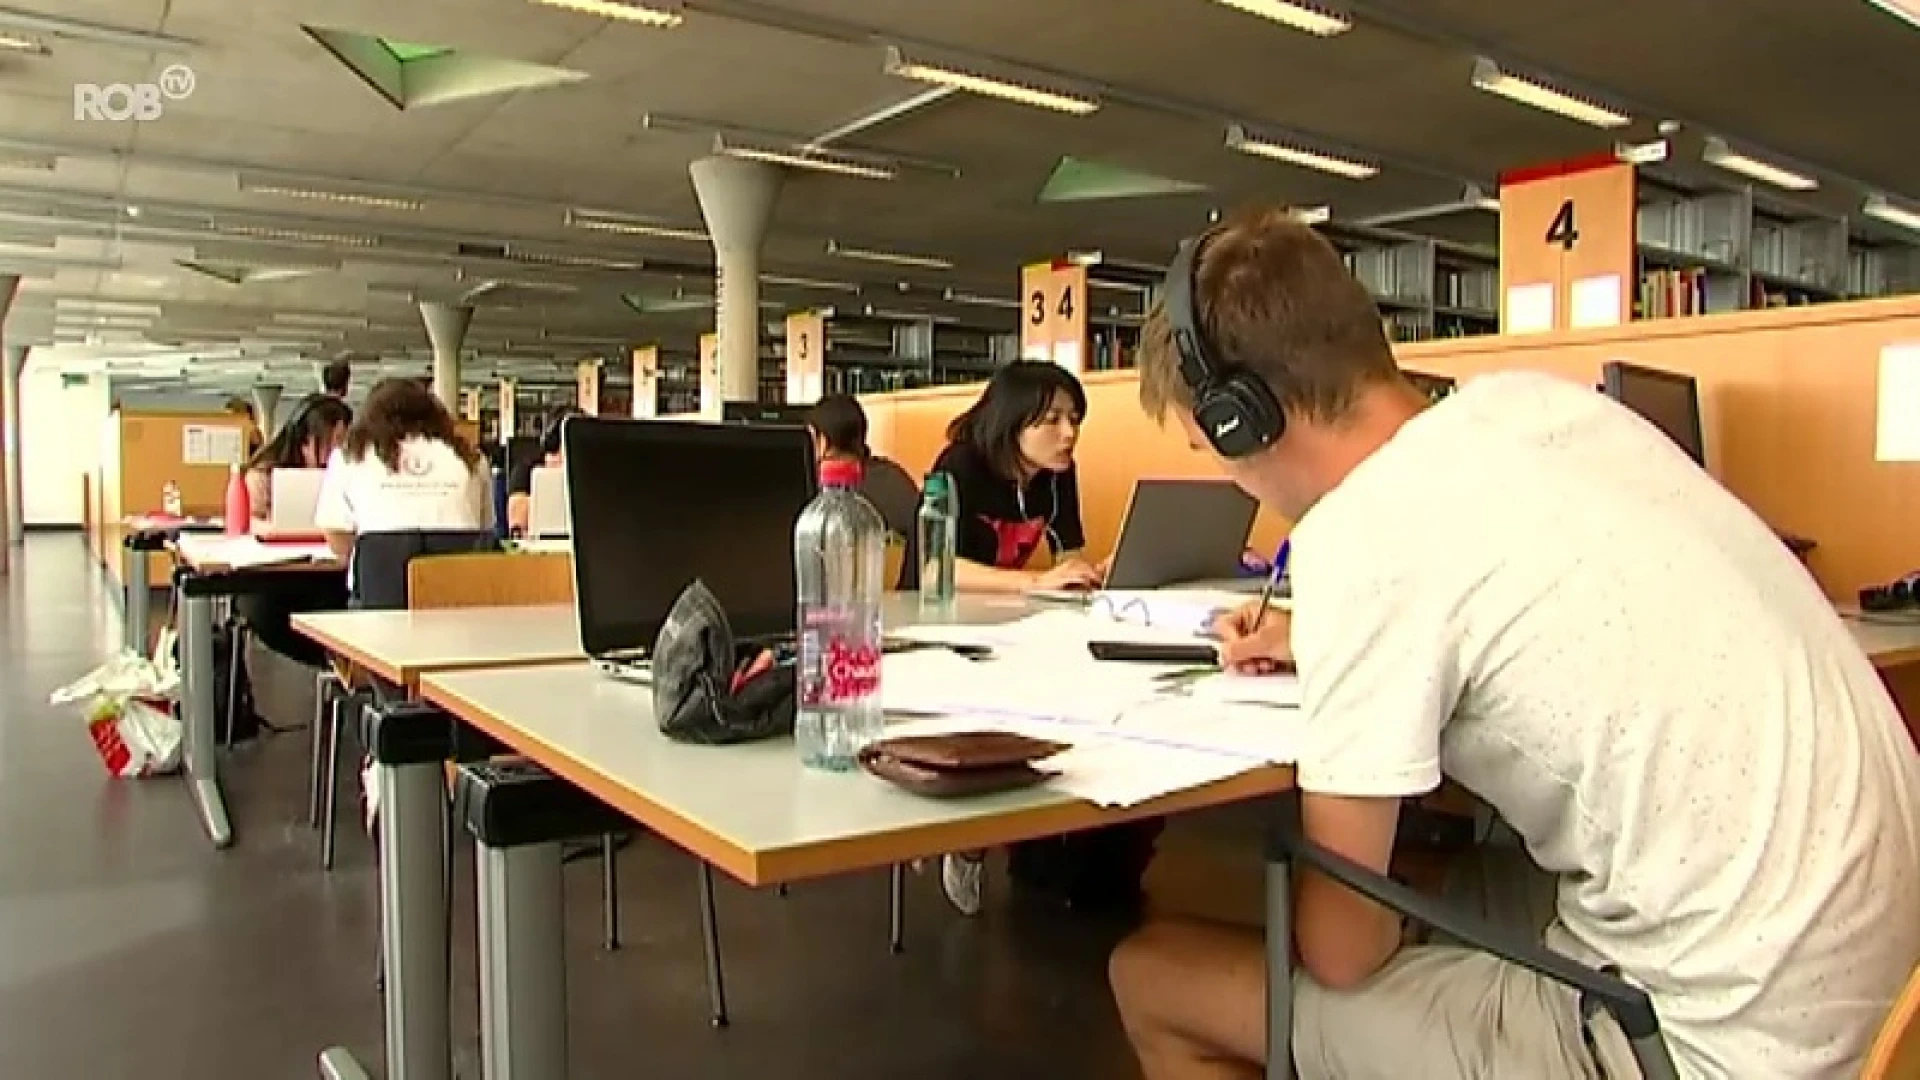 Kans bijzonder klein dat samen studeren in Leuvense bibliotheken zal lukken